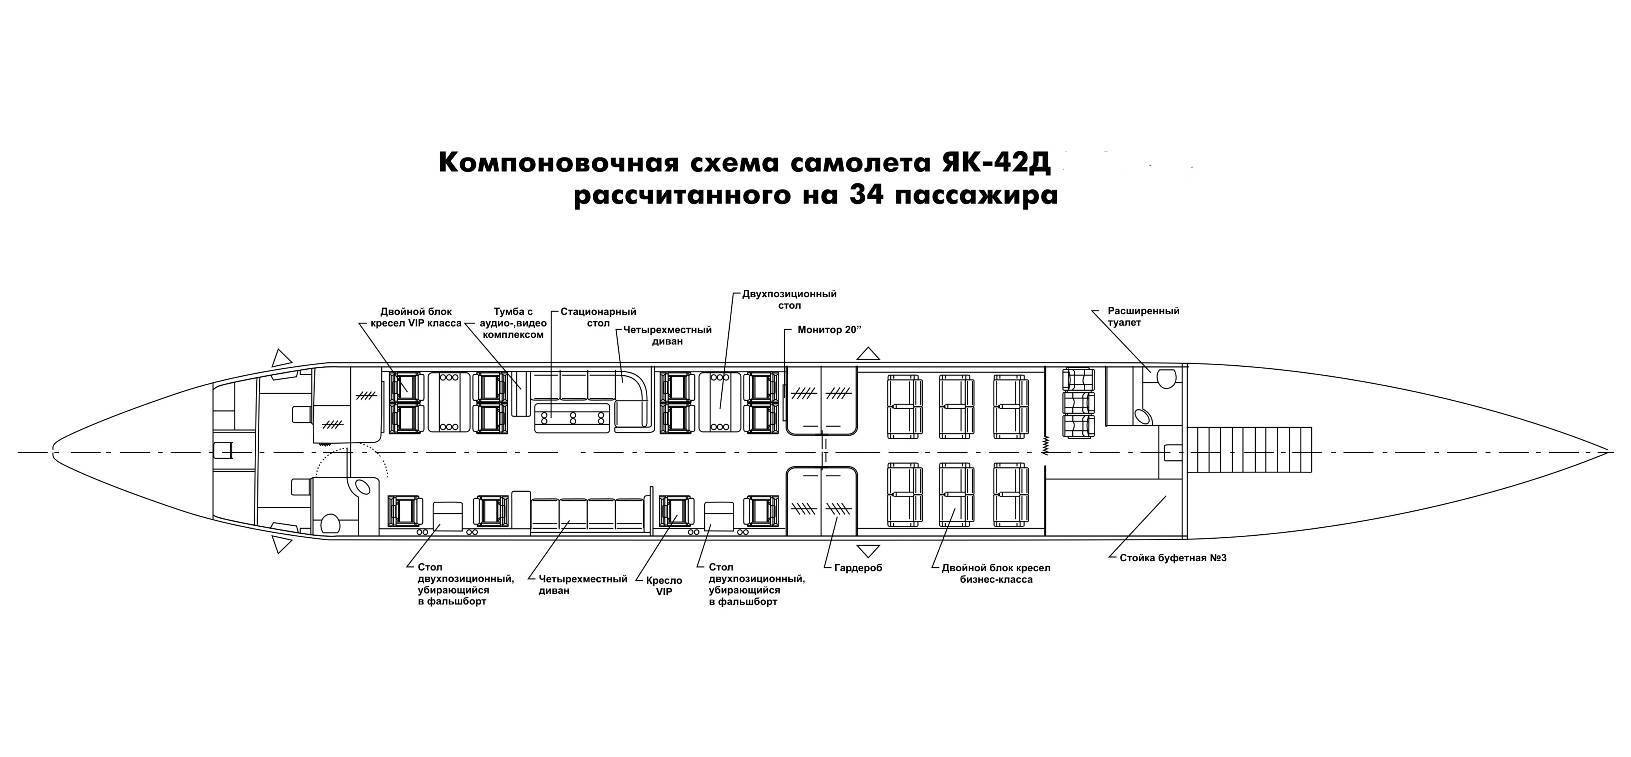 Яковлев як-40. фото и видео. схема салона и характеристики